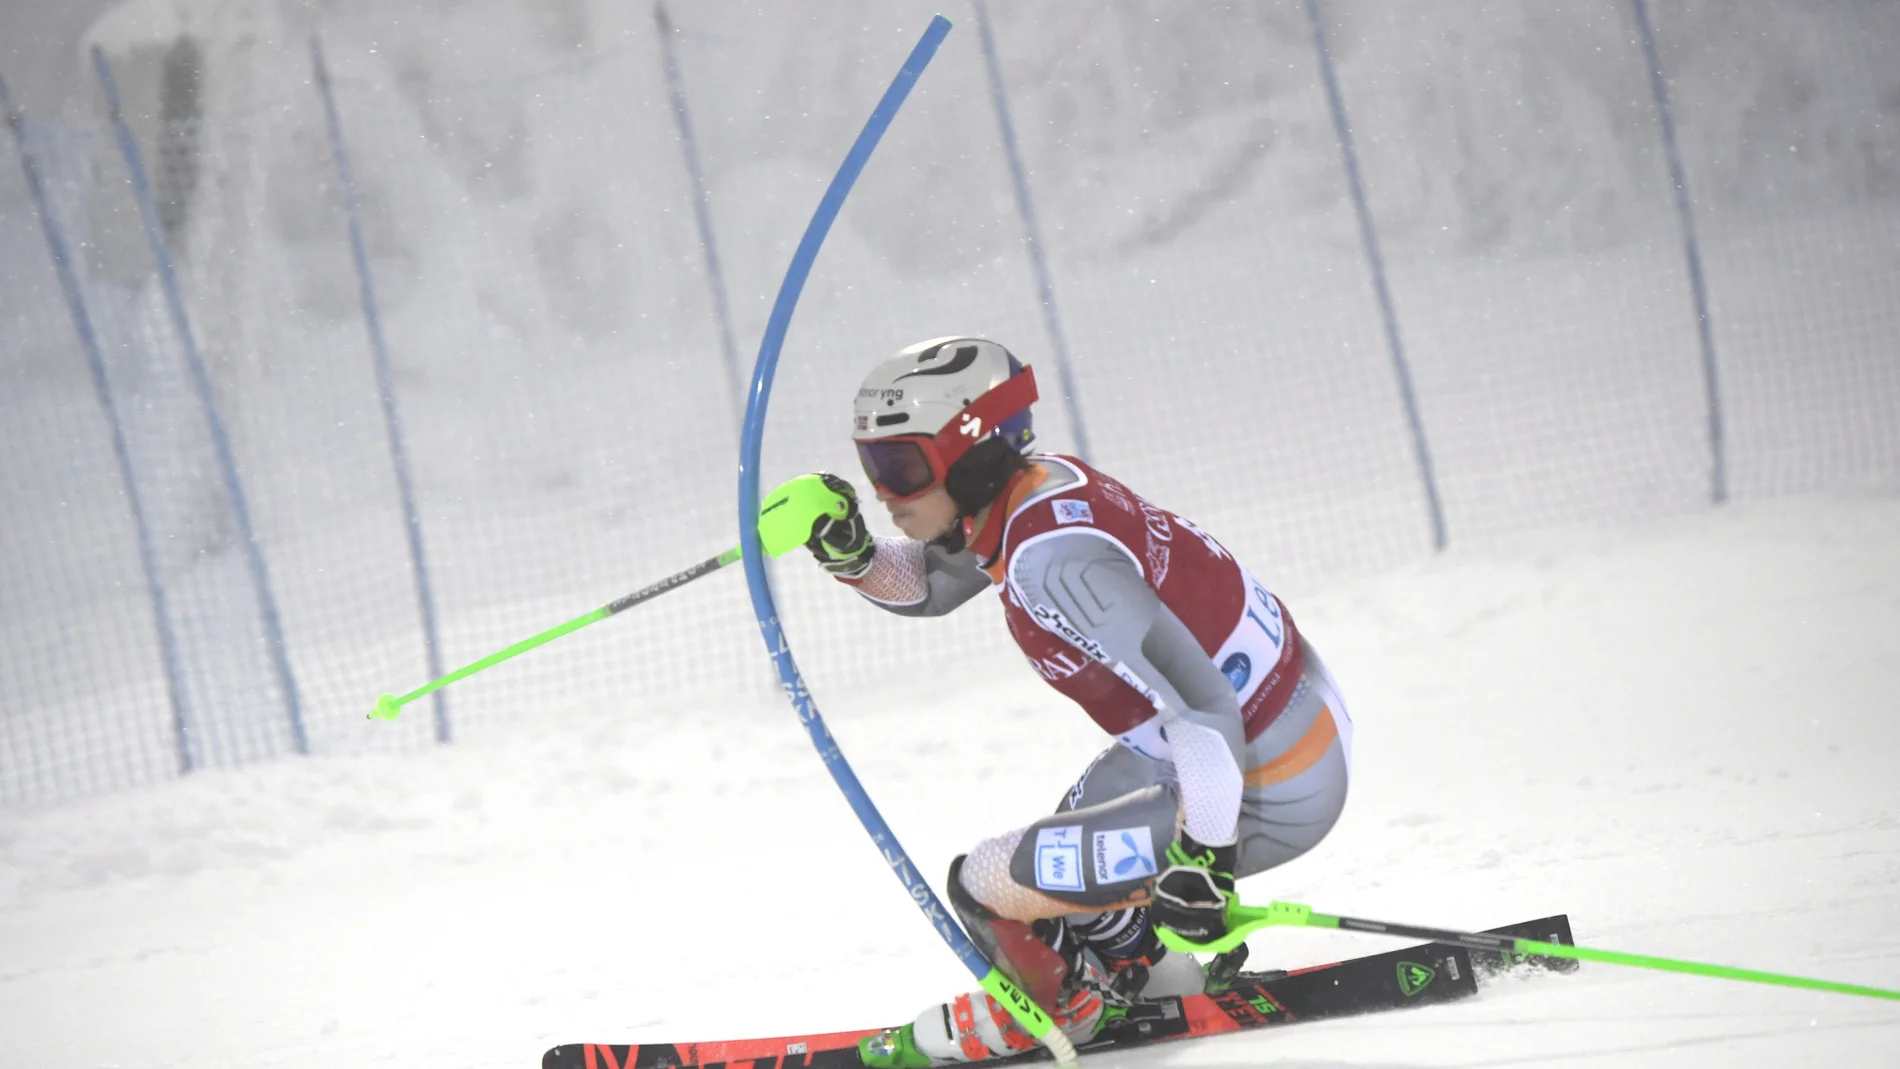 FIS Alpine Ski World Cup in Finland